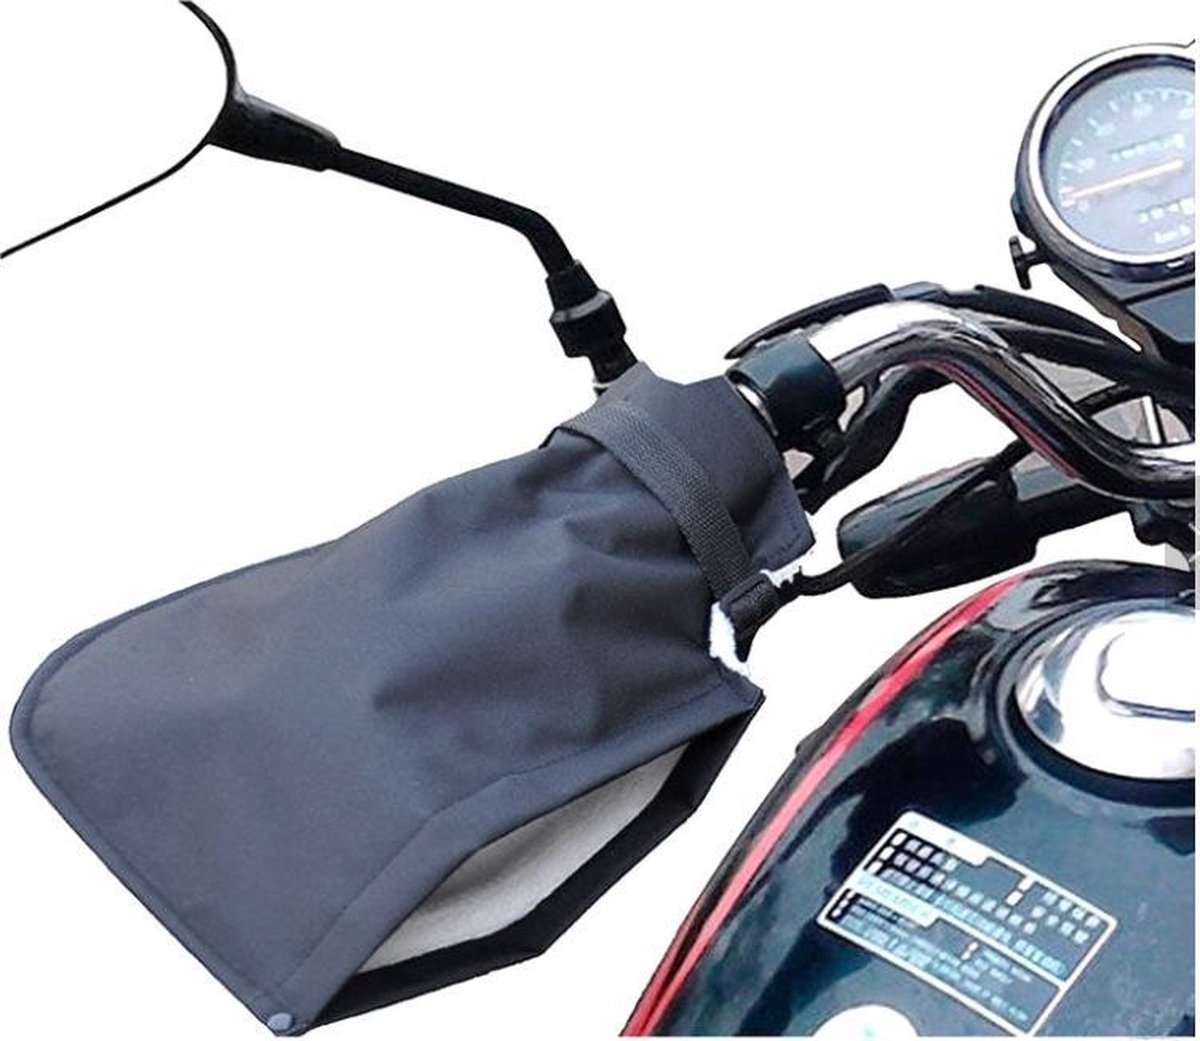 ROCKBROS manchettes de guidon gants de guidon pour vélo moto scooter d –